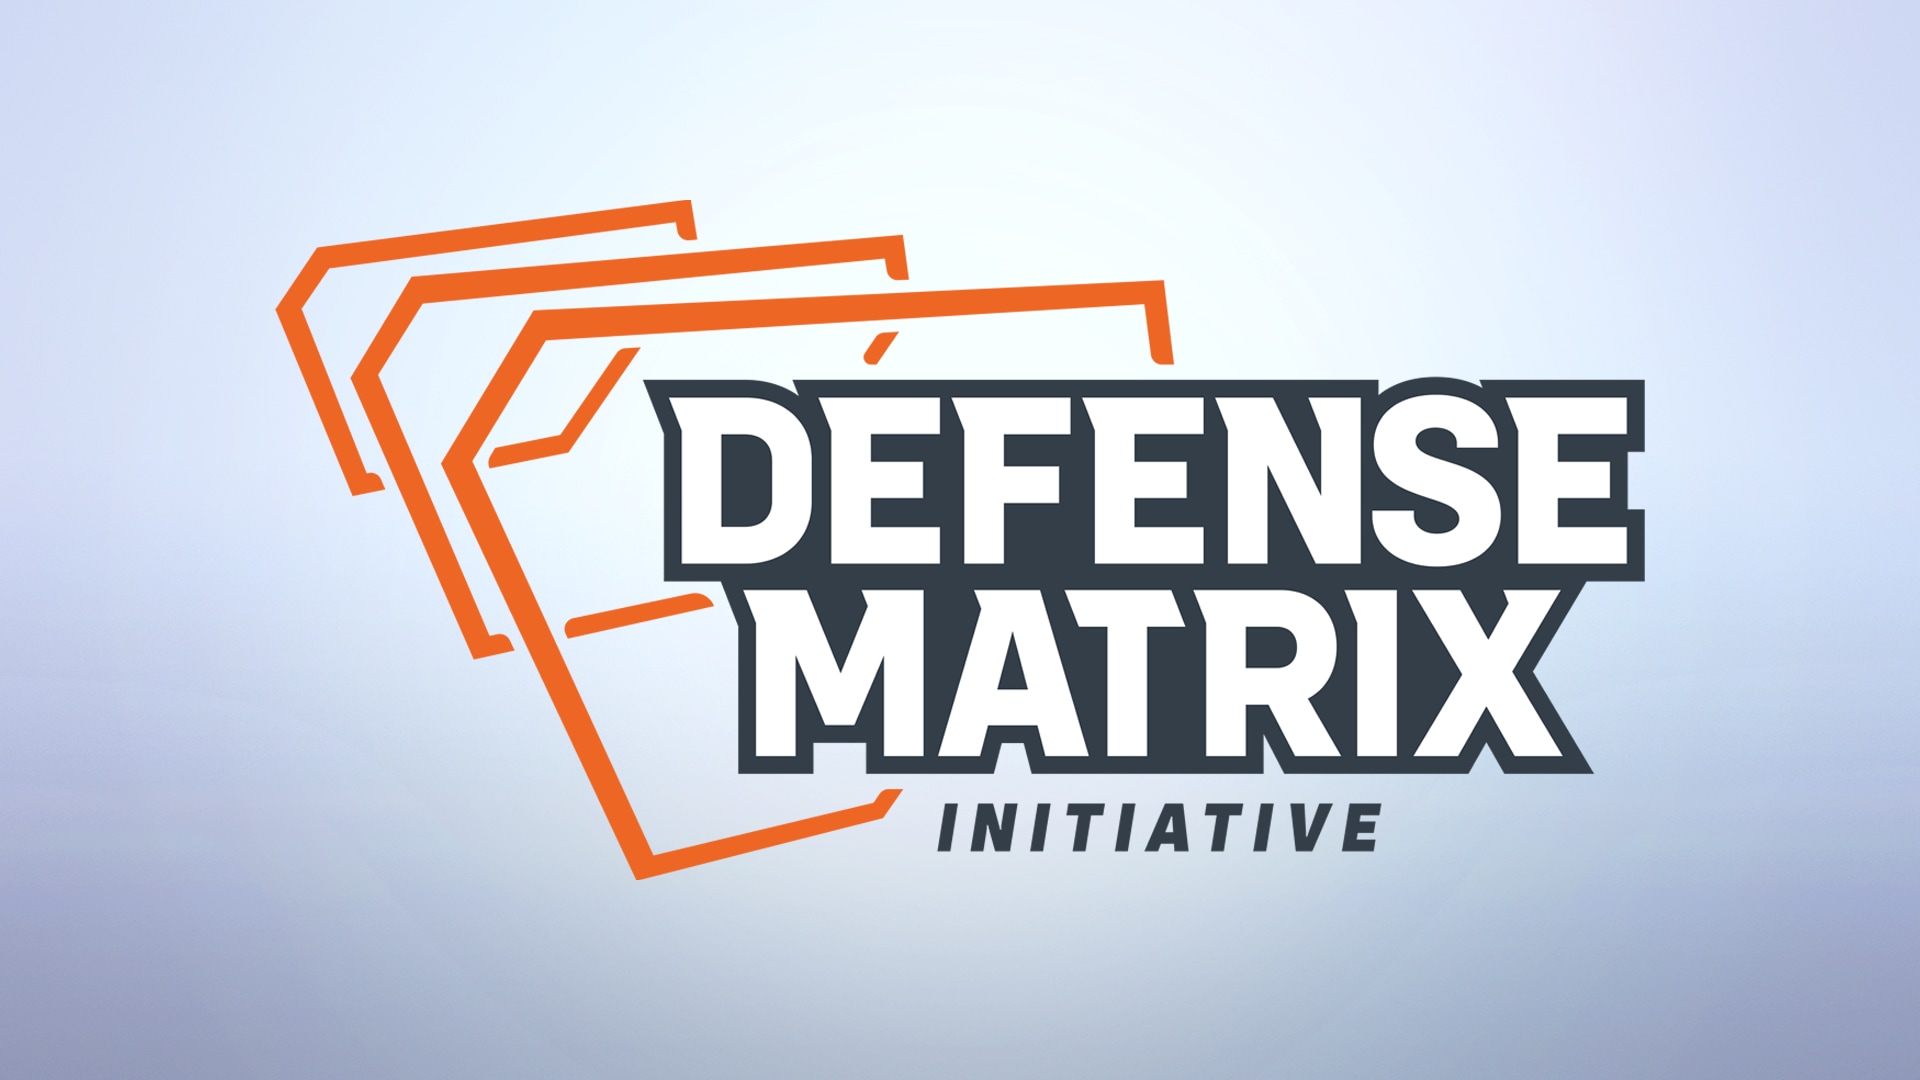 Actualización de la Matriz de defensa: funciones de protección para las trasmisiones y nuevas acciones por hacer trampa